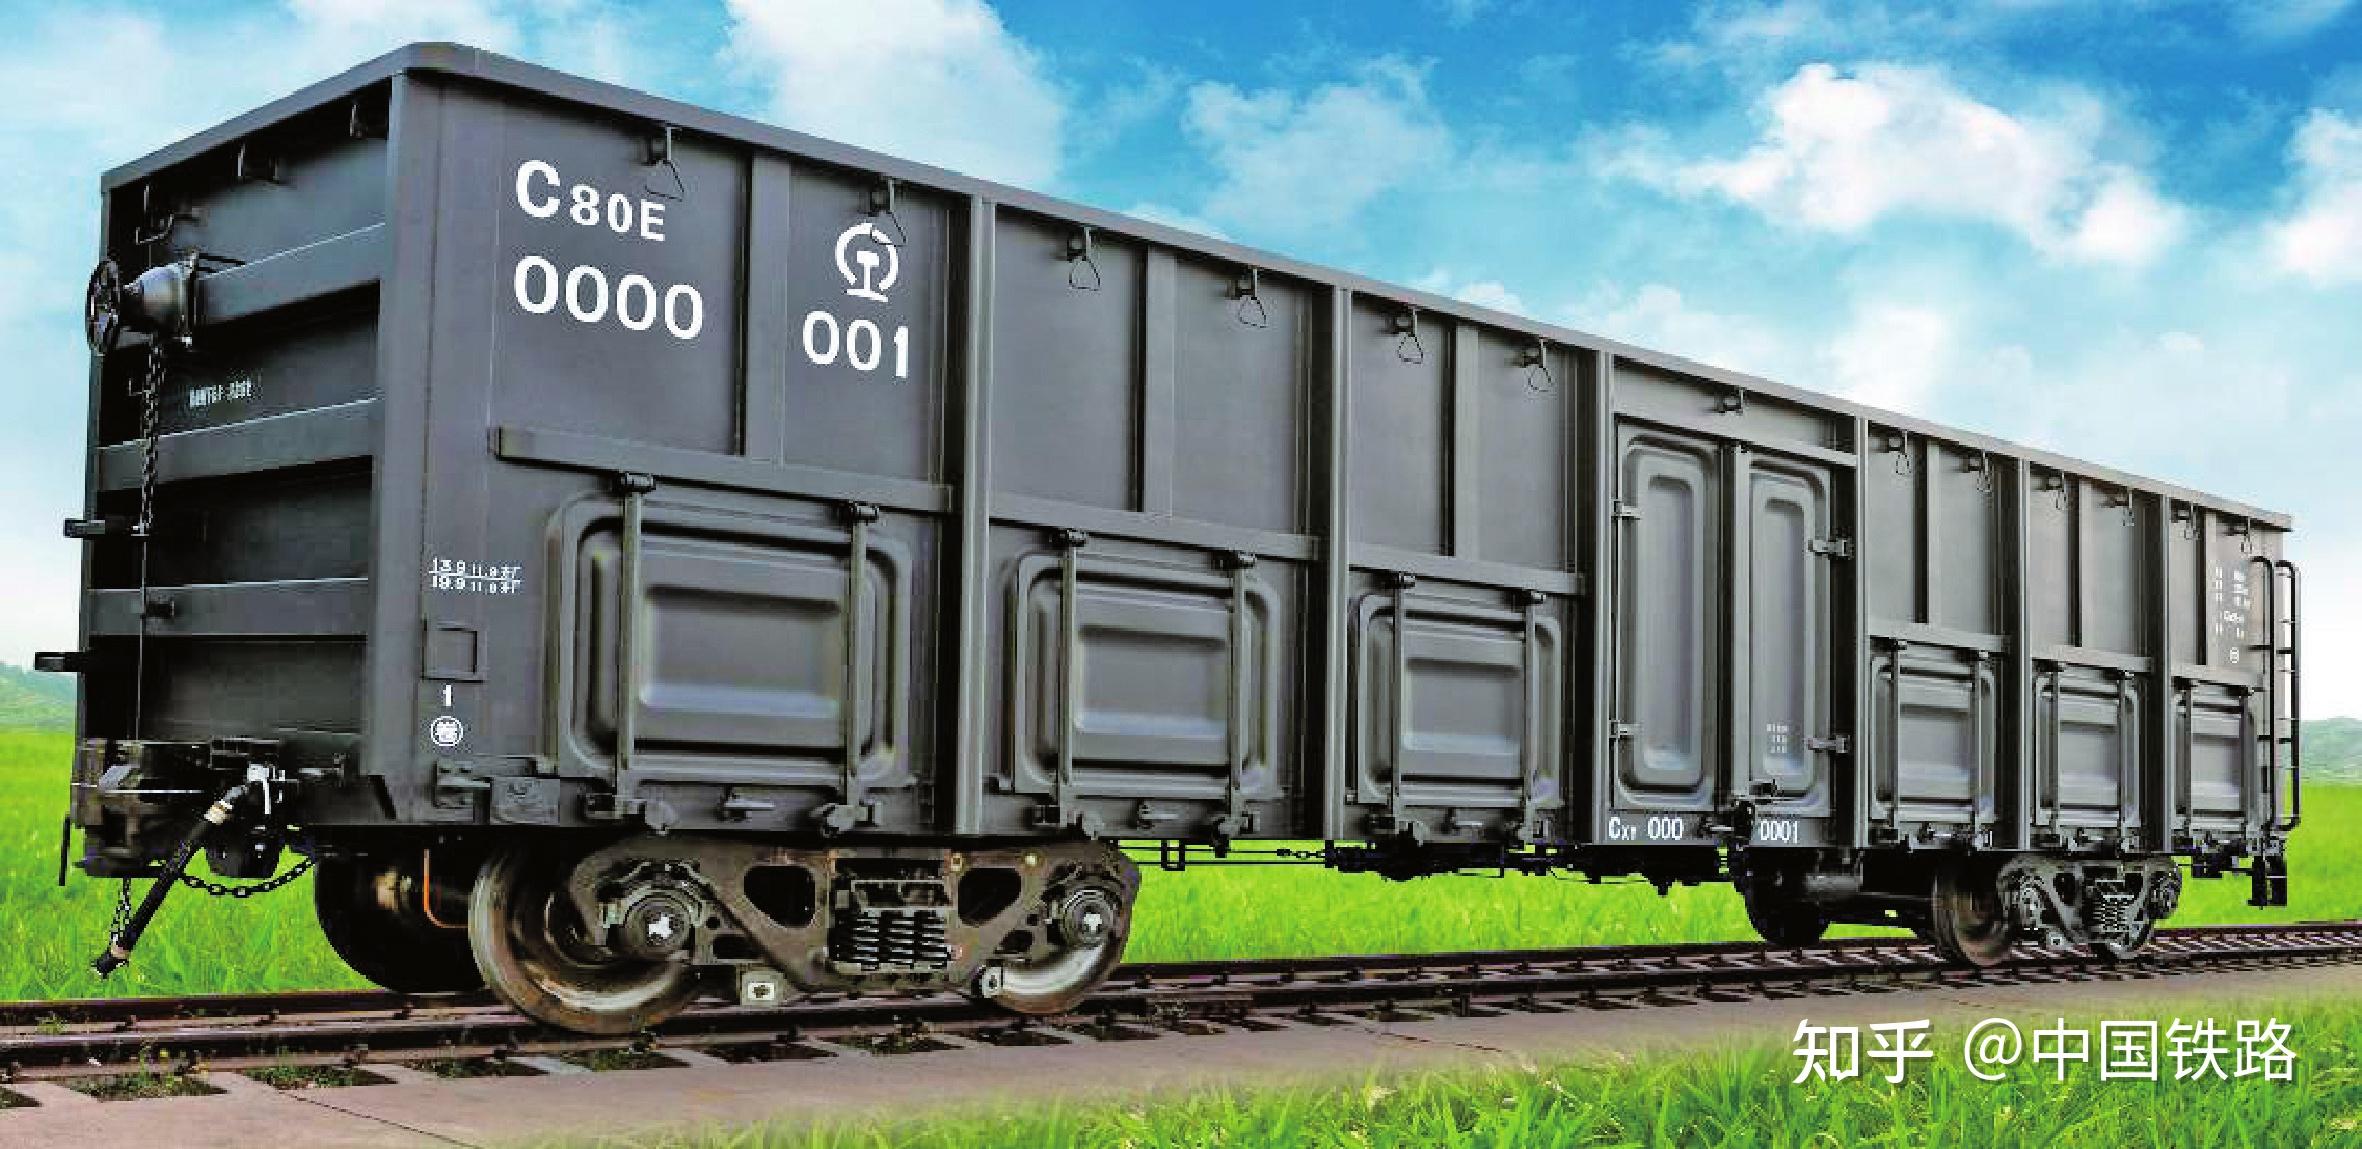 图9 c80e(h,f)型通用敞车来源:《铁路货车概要》